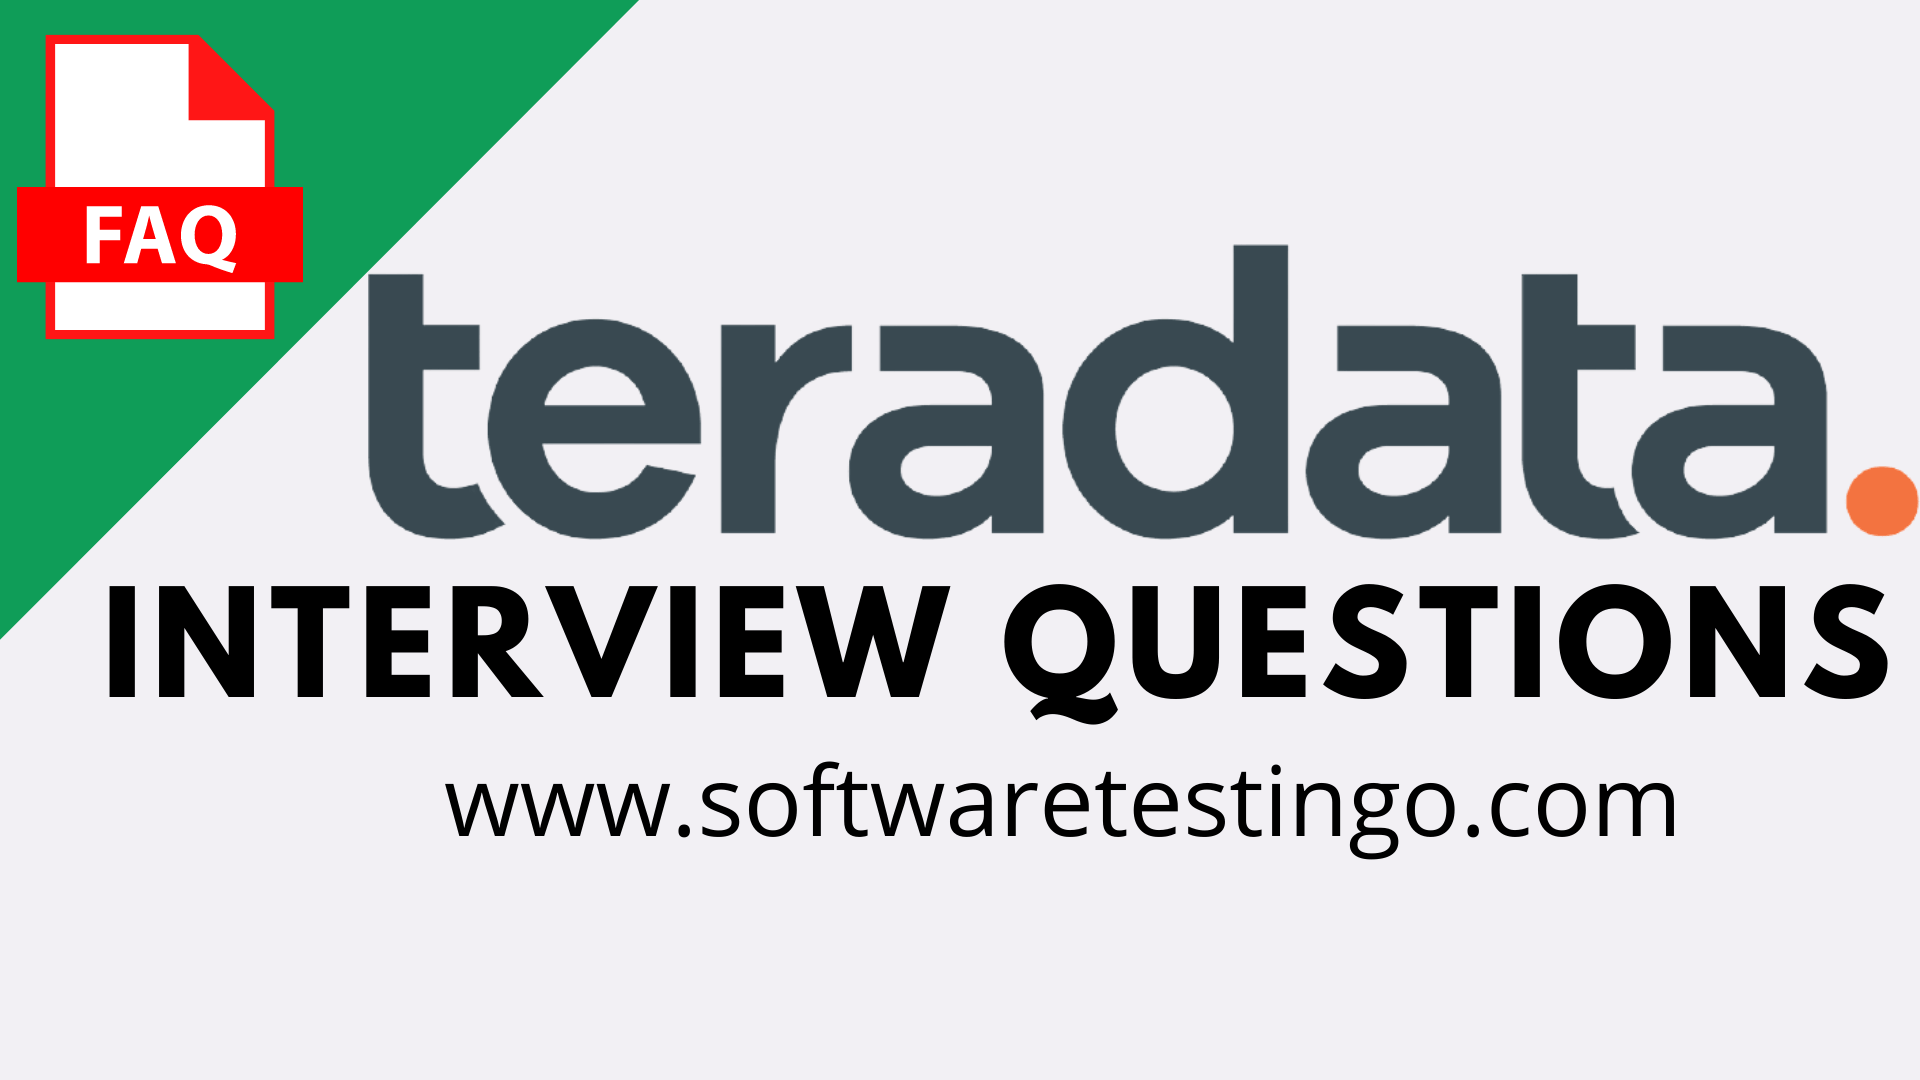 Teradata Interview Questions